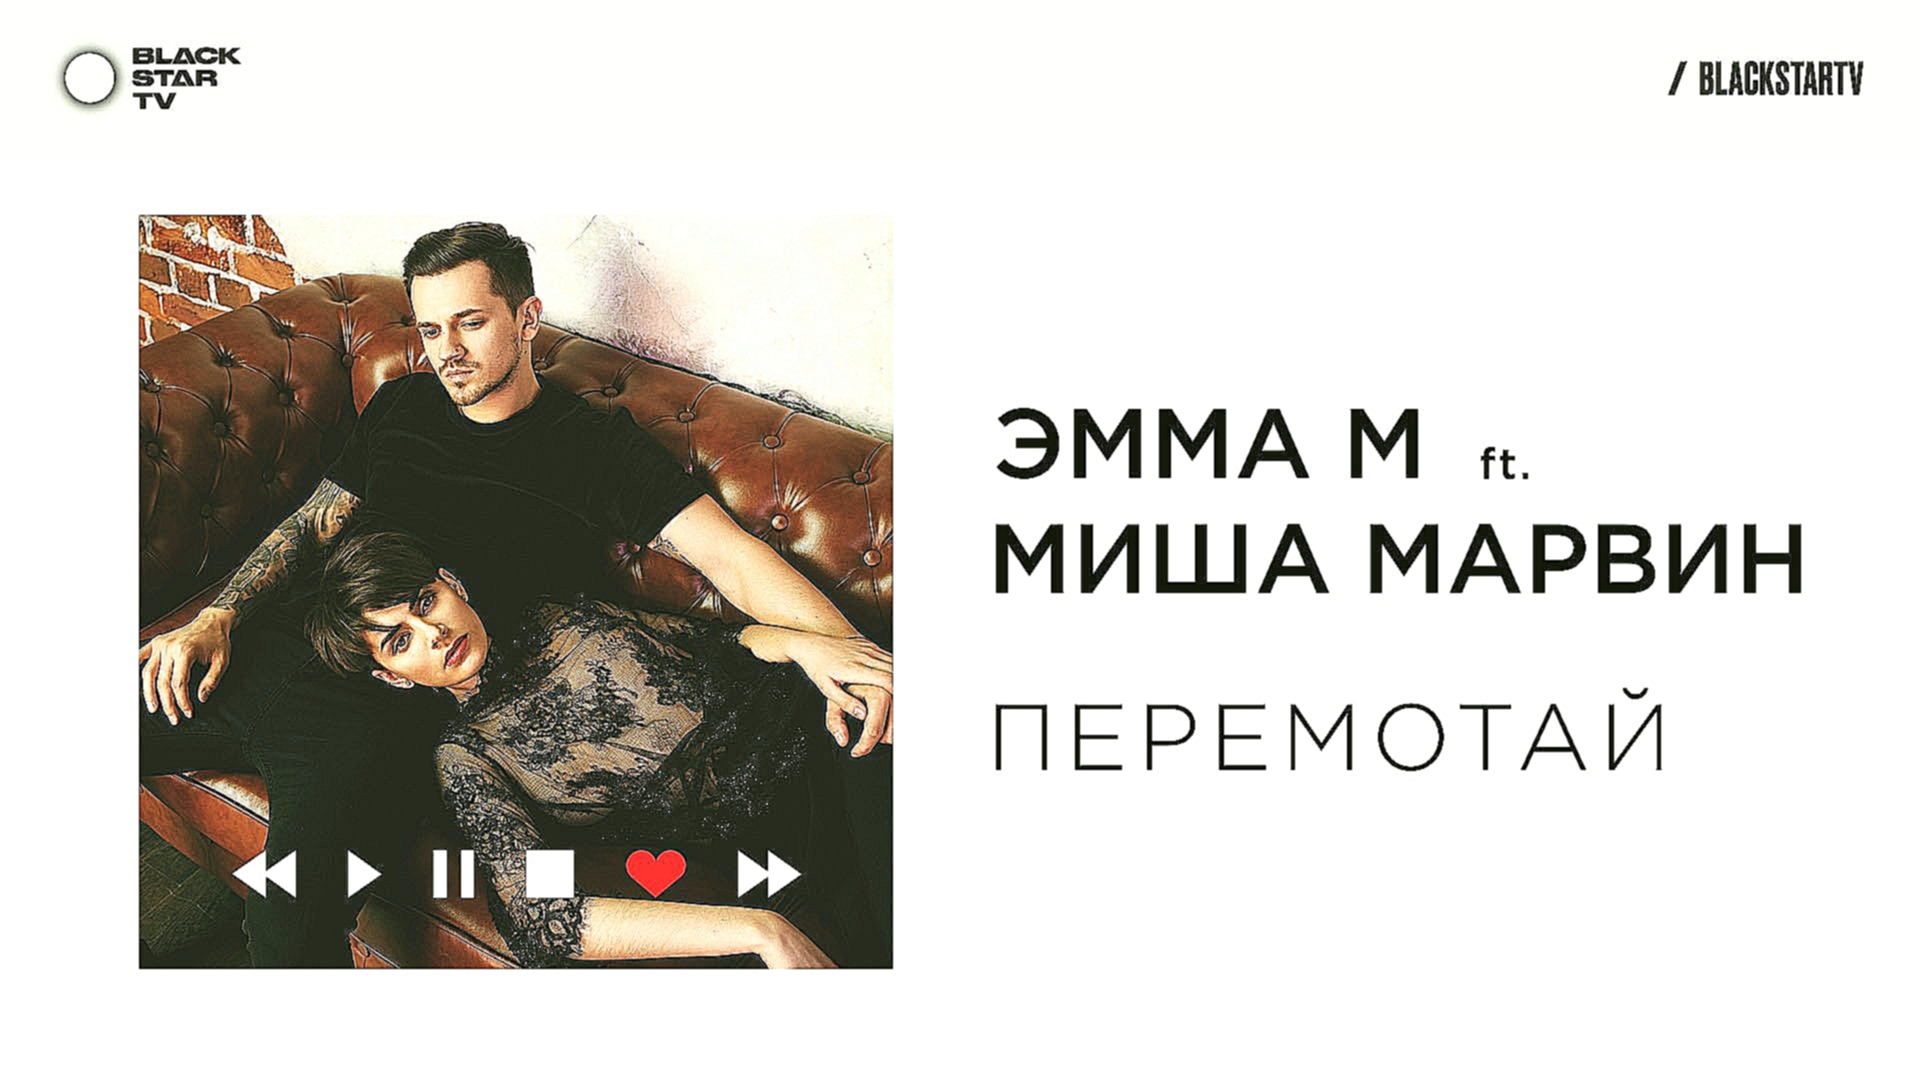 ЭММА М ft. Миша Марвин - Перемотай (премьера трека, 2017)  